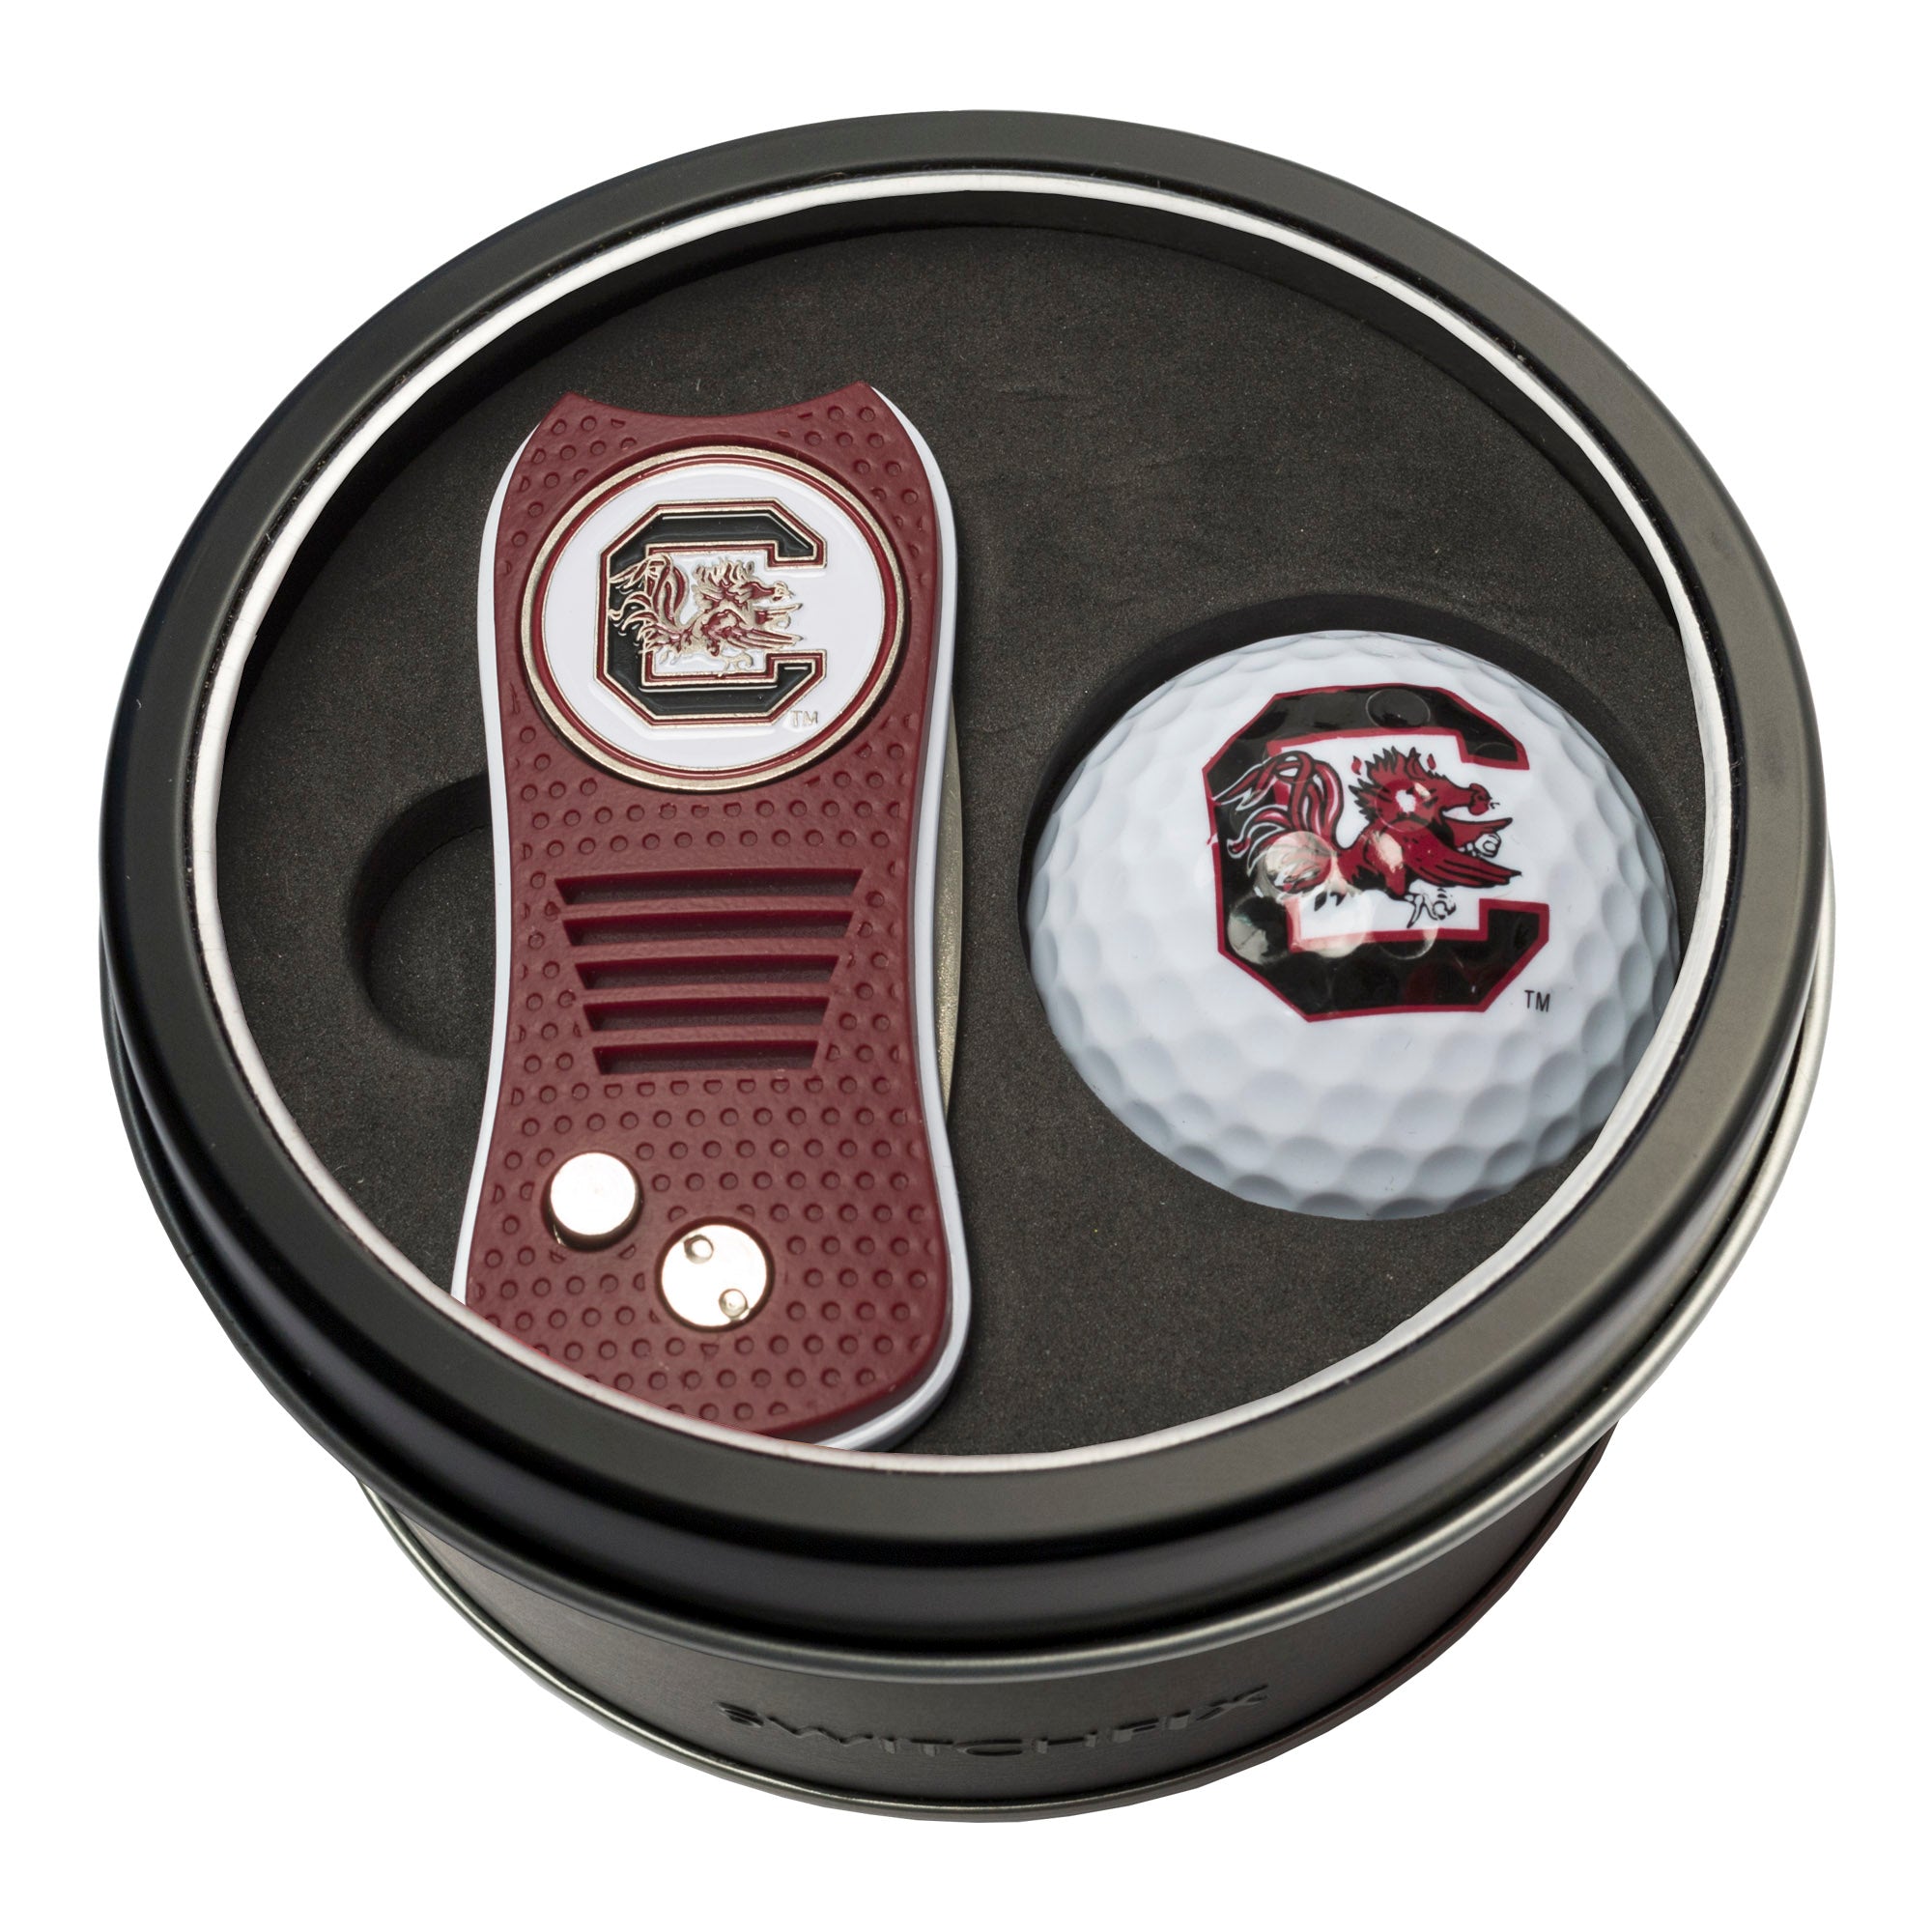 South Carolina Gamecocks Switchblade Divot Tool + Golf Ball Tin Gift Set